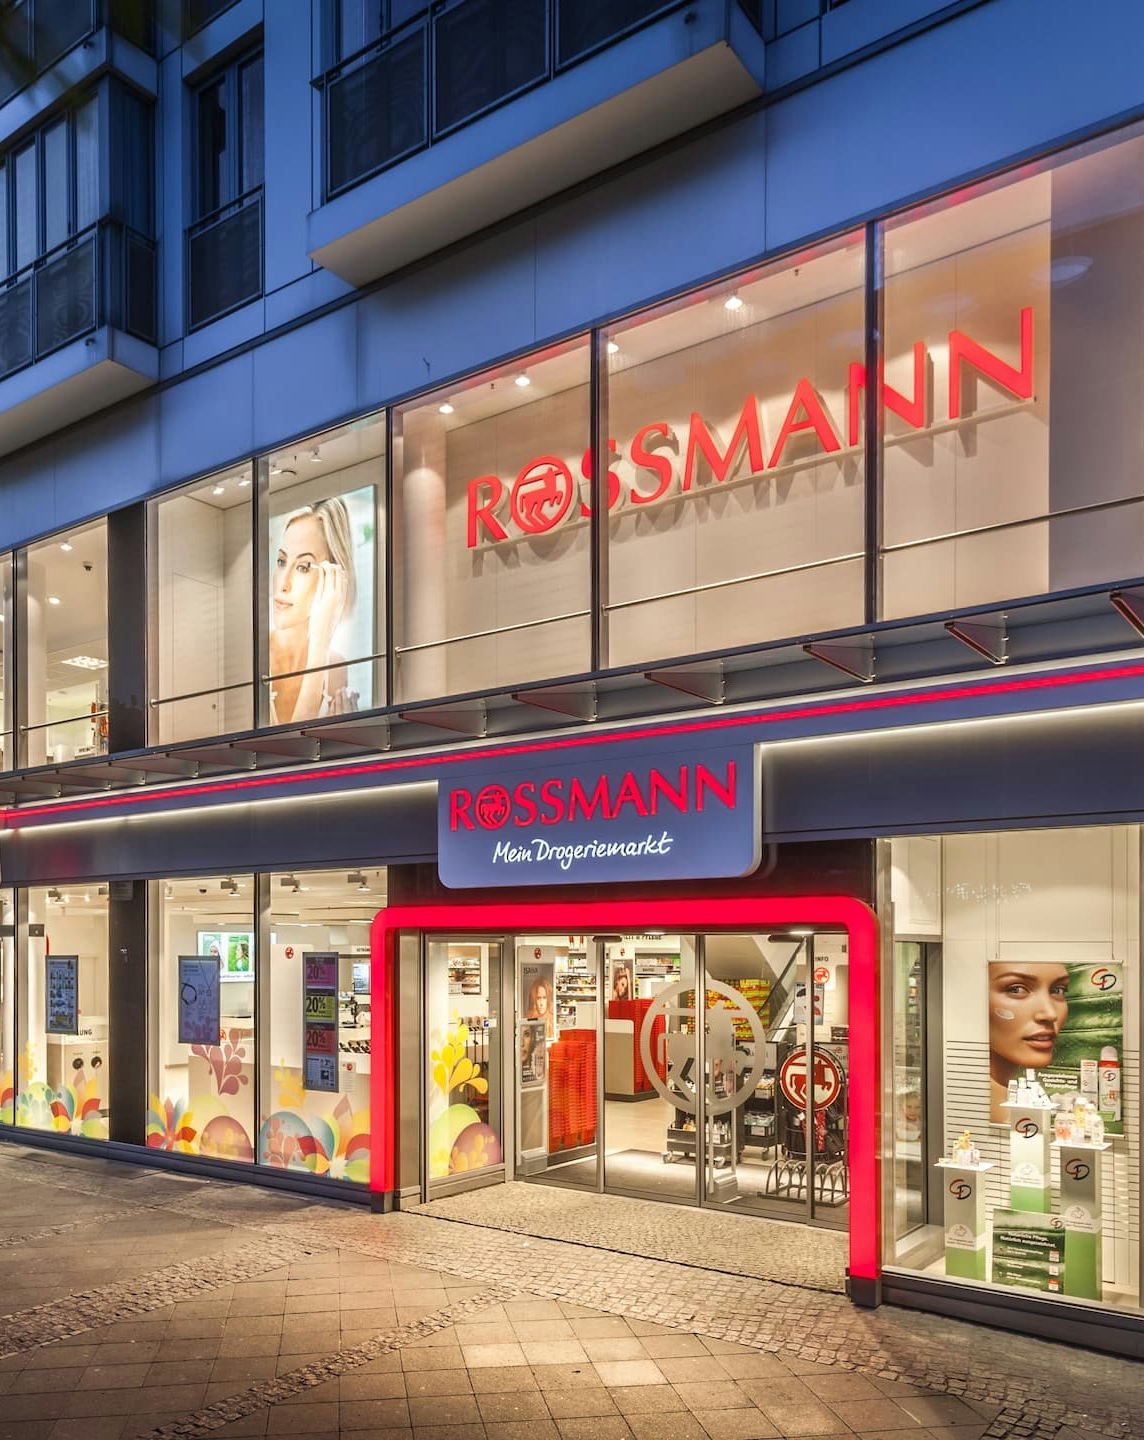 Rossmann store in a pedestrian zone